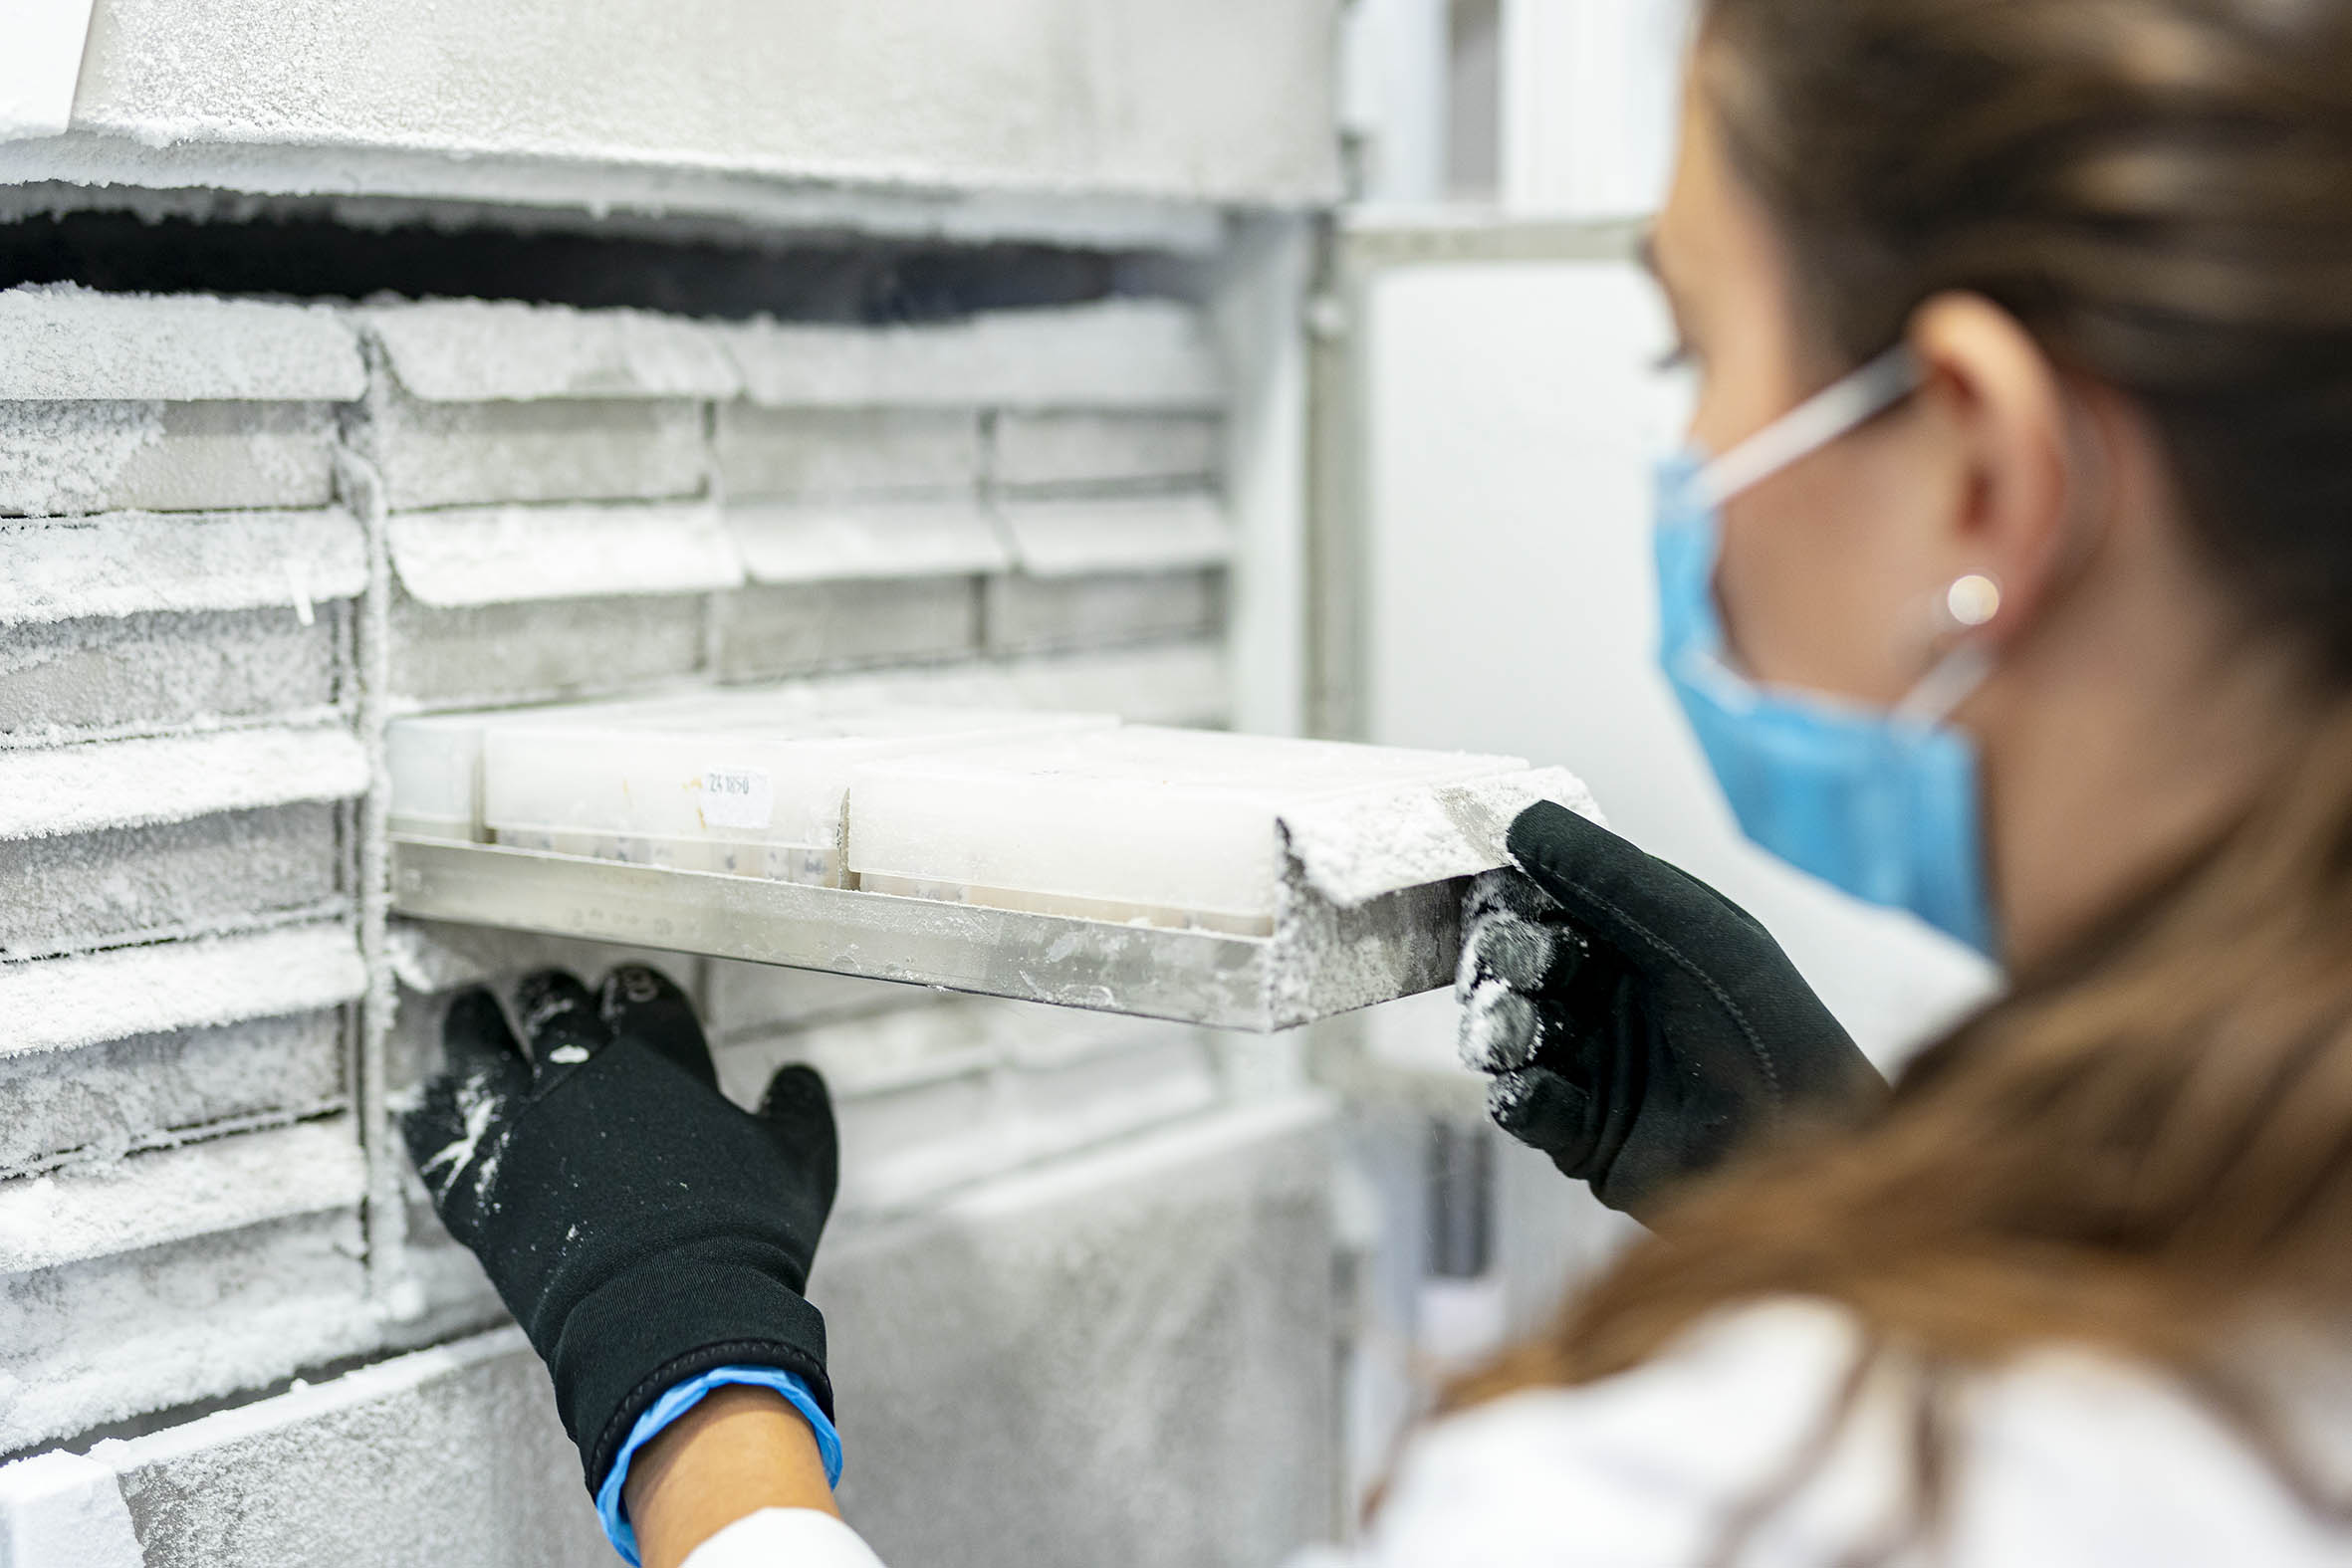 La Fundación del Hospital Provincial de Castellón gestiona y conserva más de 5.000 muestras biológicas de alta calidad para respaldar líneas de investigación en todo el país